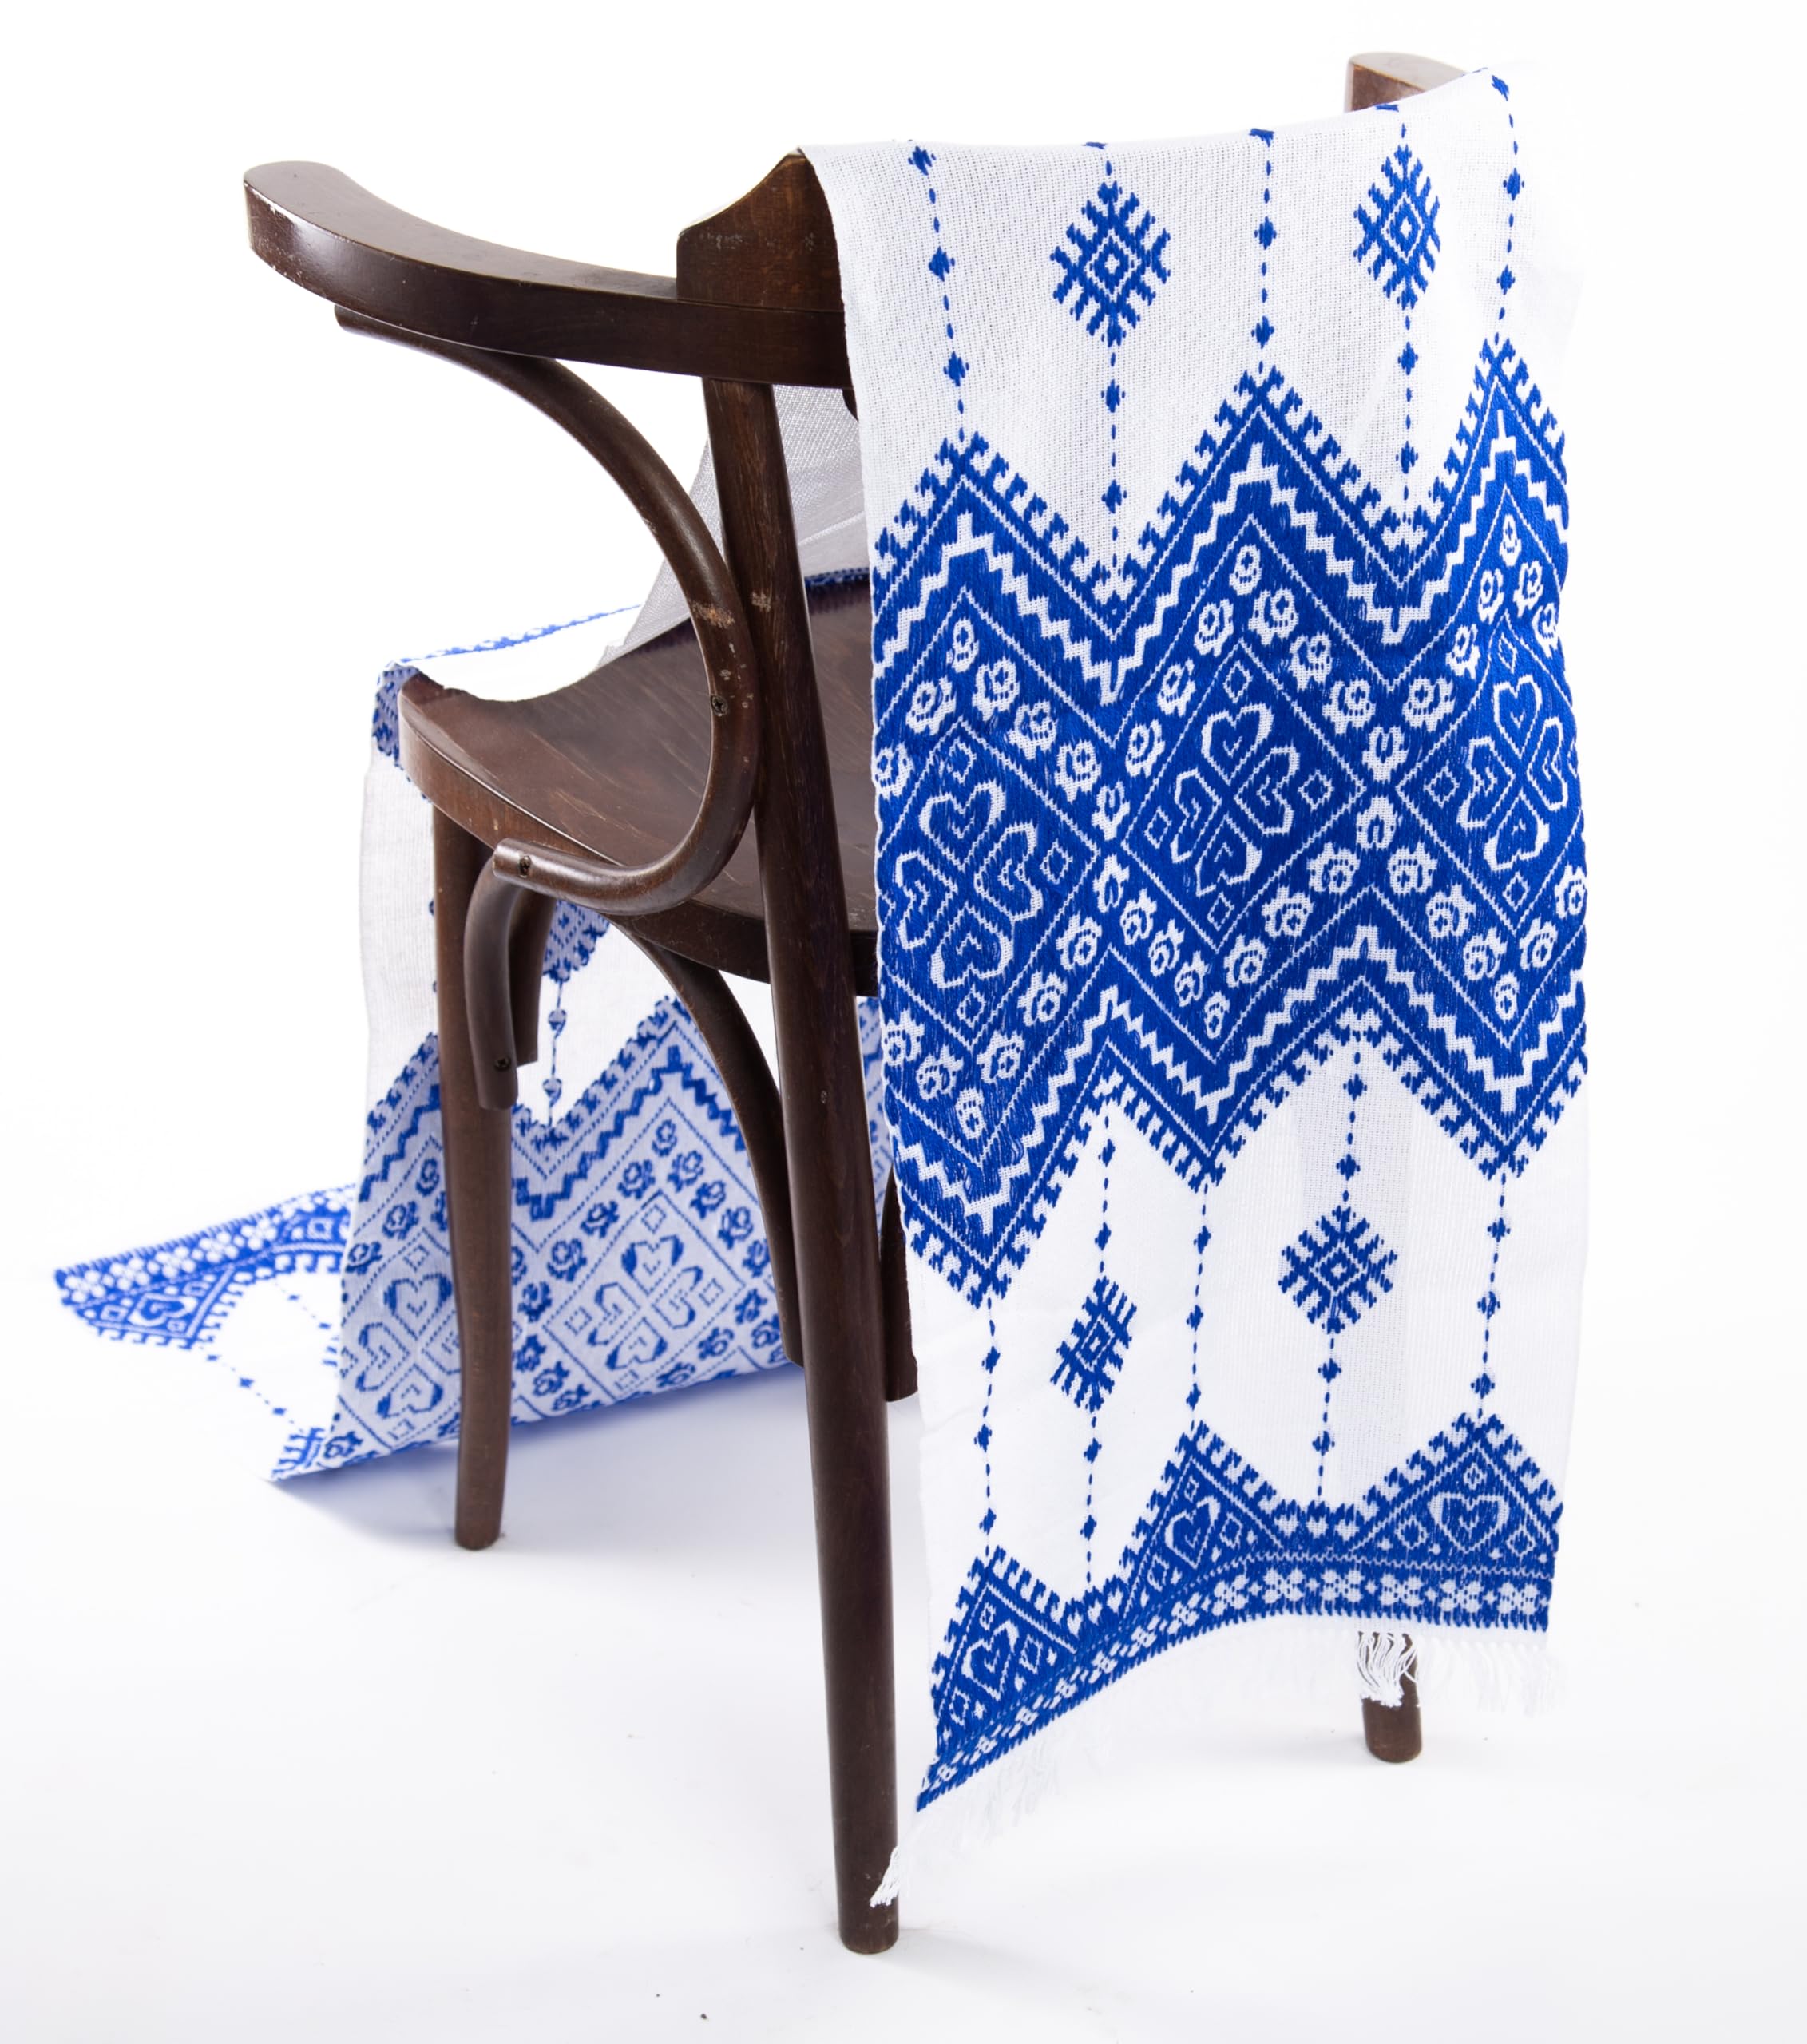 Rushnichok Ukrainian RUSHNYK Hand Embroidered Towel White Blue Wedding Decor 190 x 33 cm